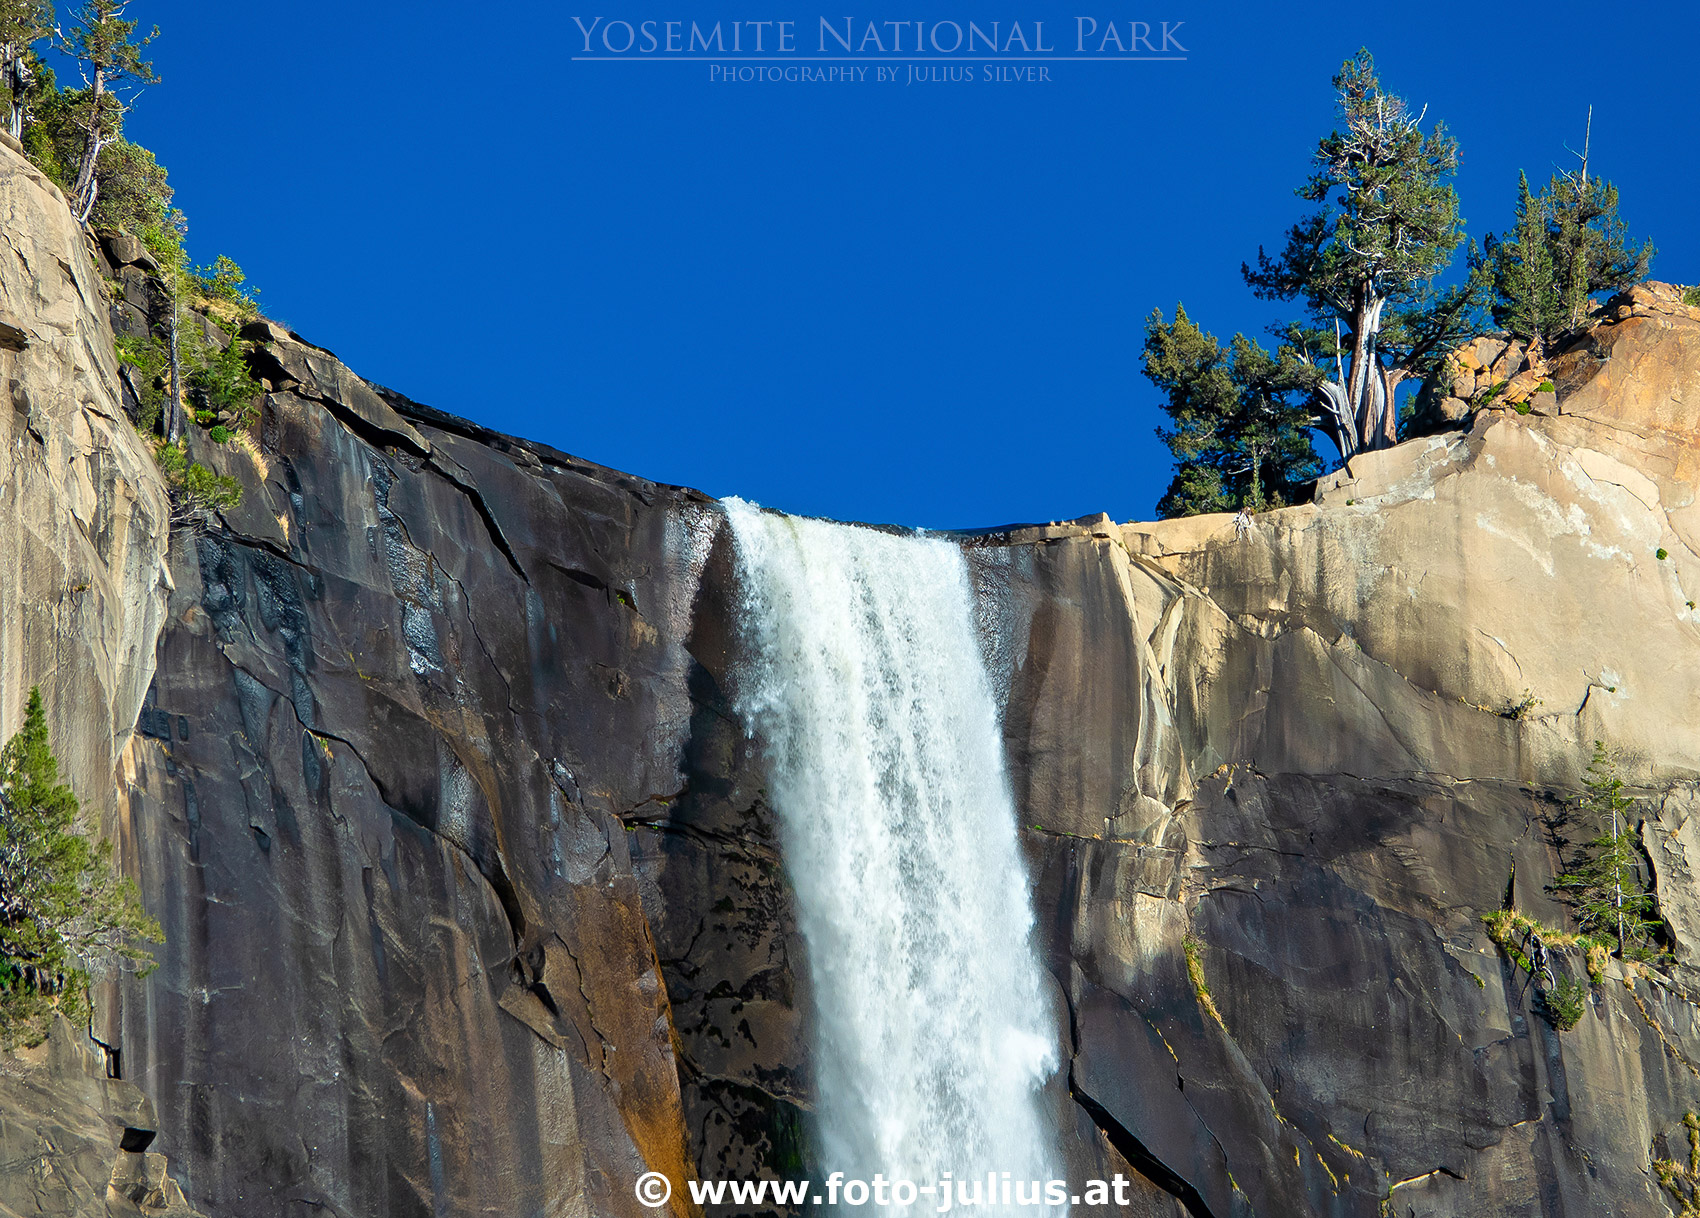 940a_Yosemite_National_Park.jpg, 775kB